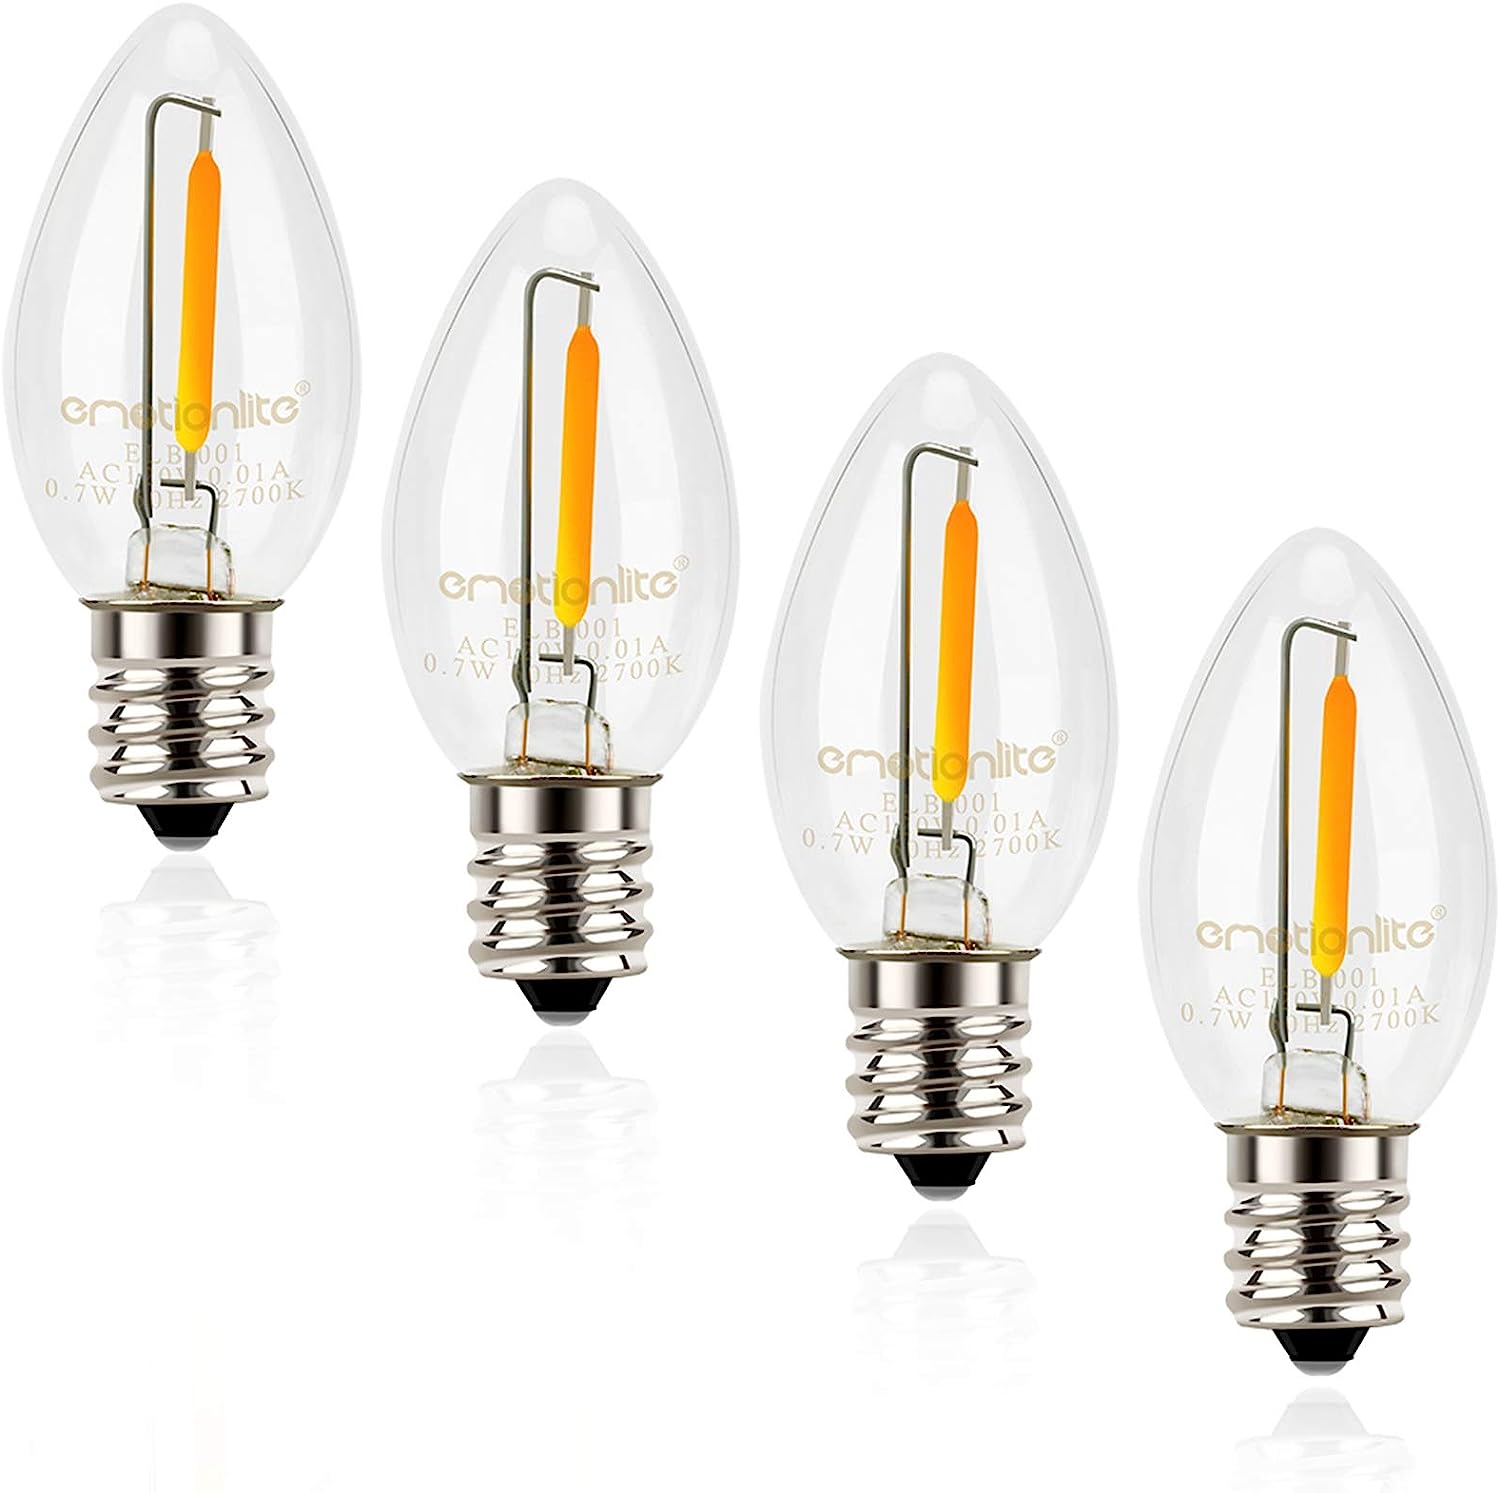 Emotionlite C7 Candelabra LED Light Bulbs